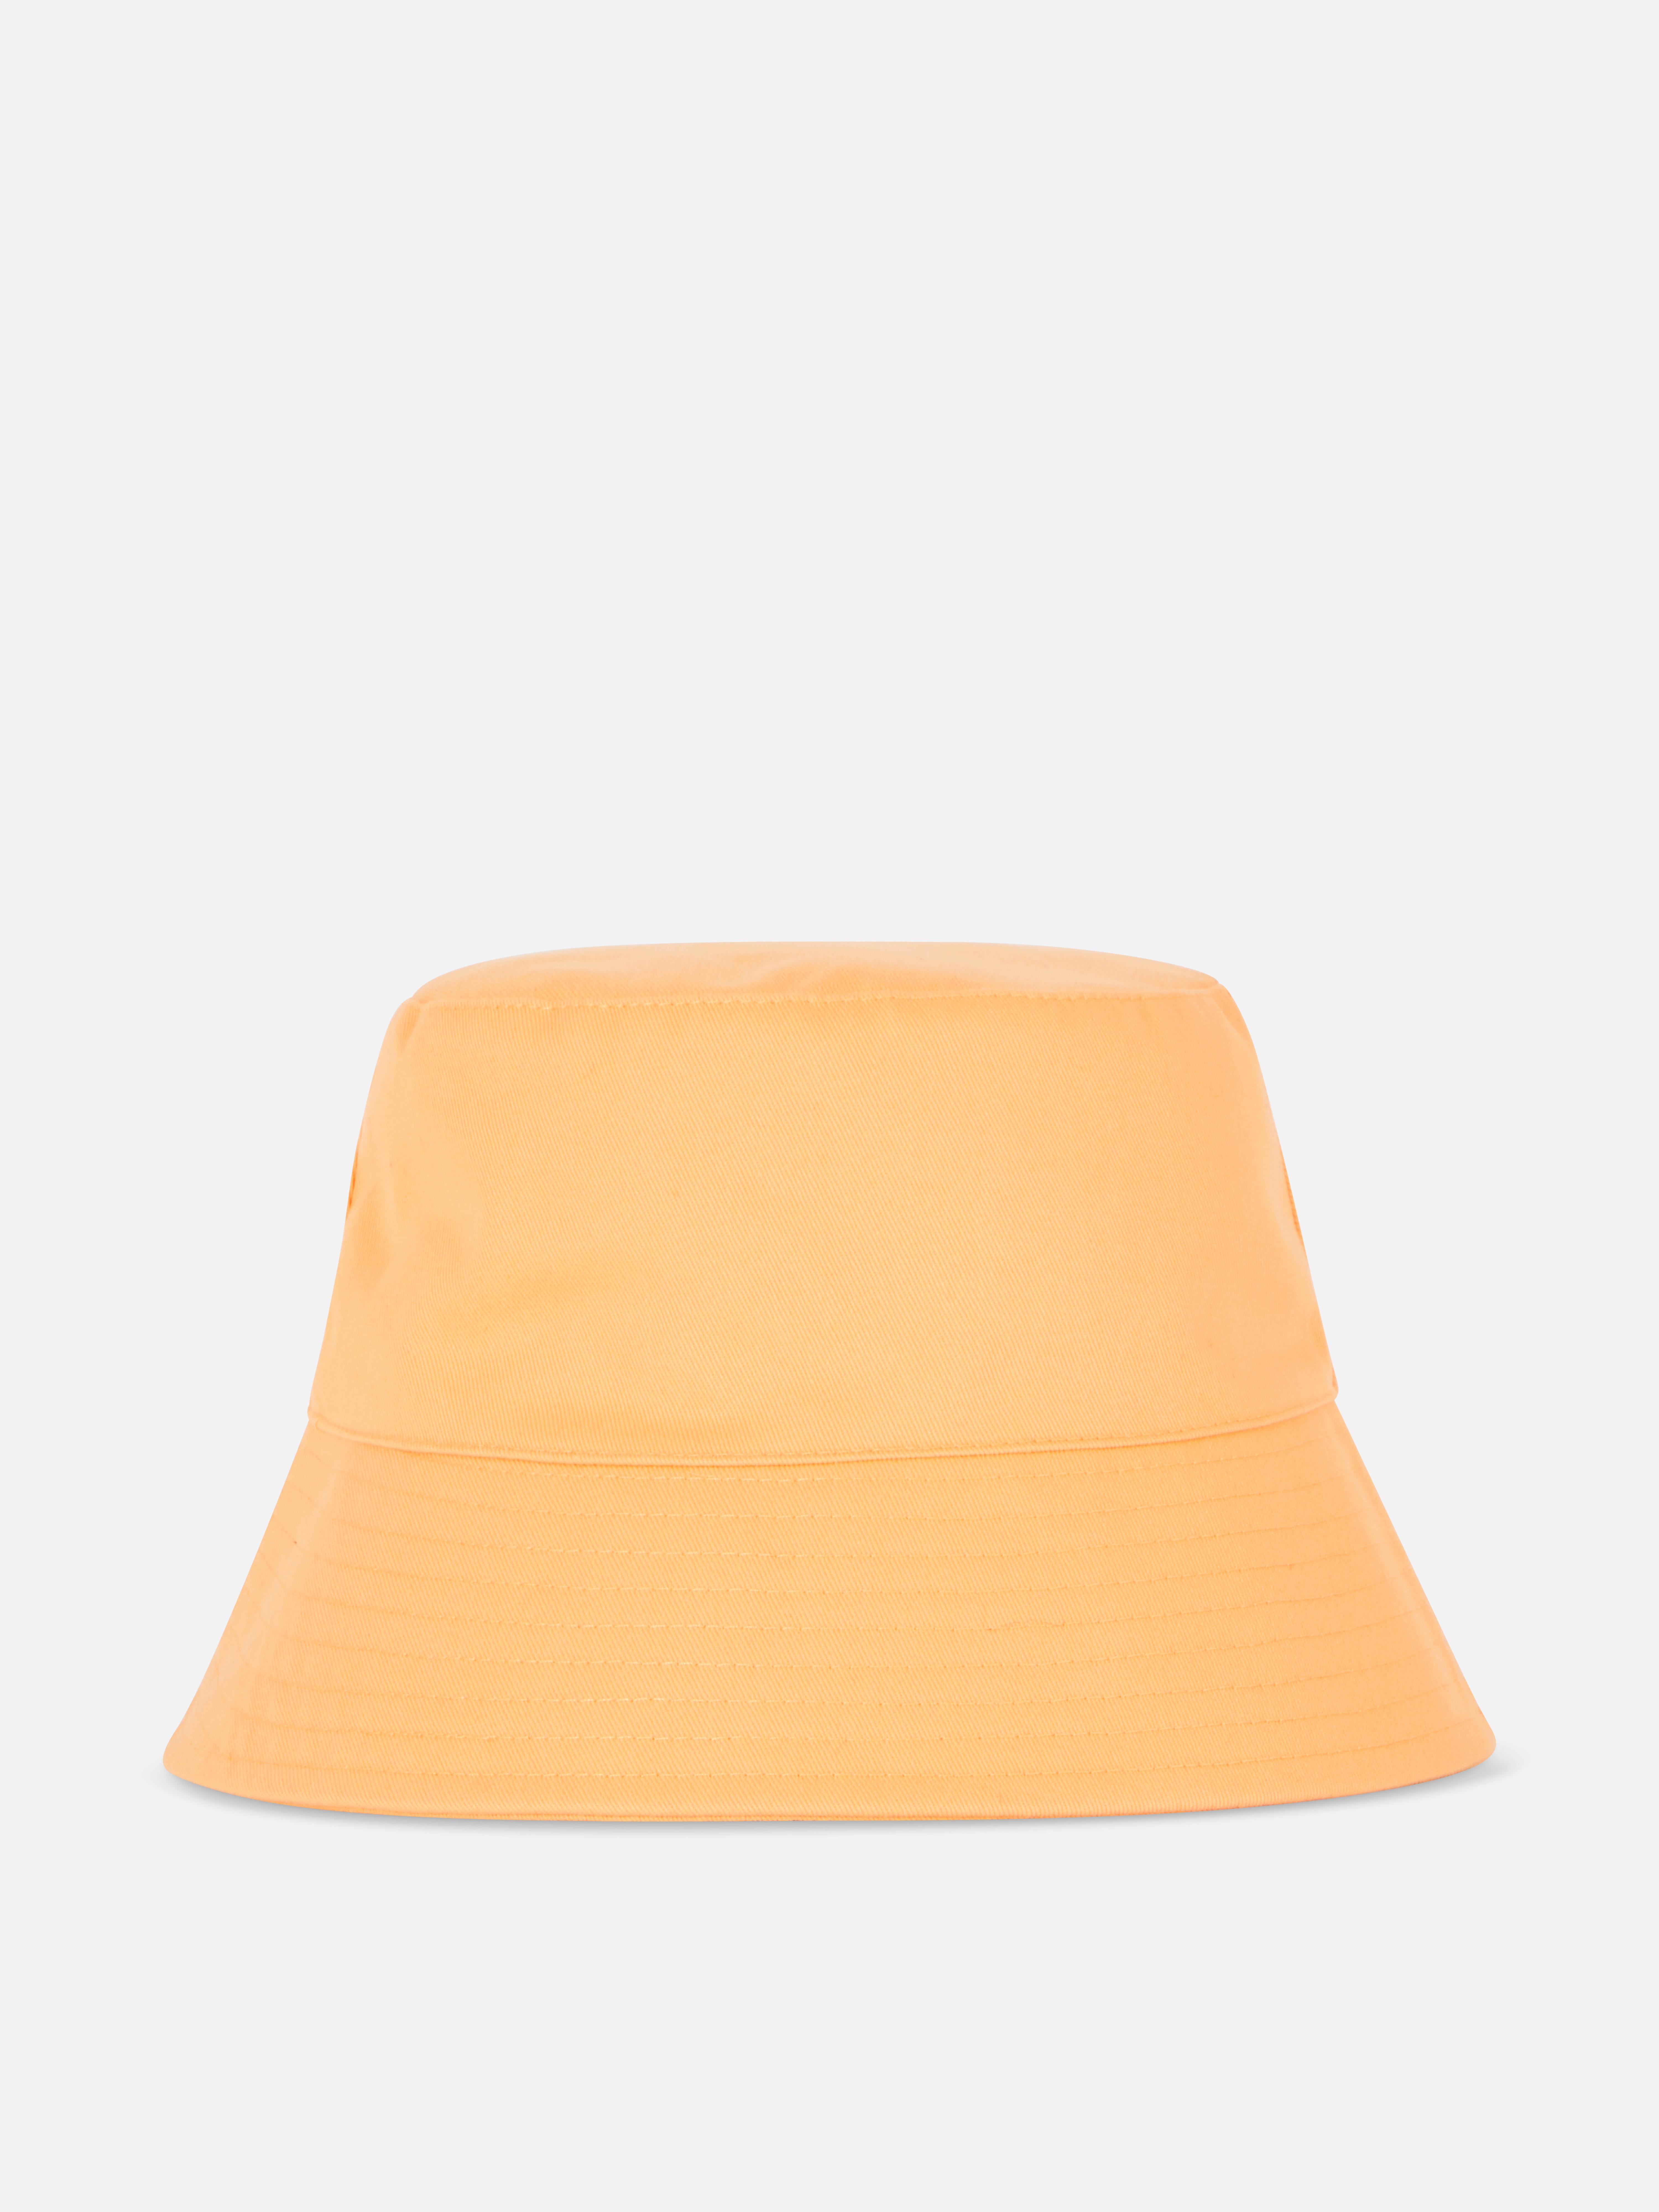 Canvas Bucket Hat